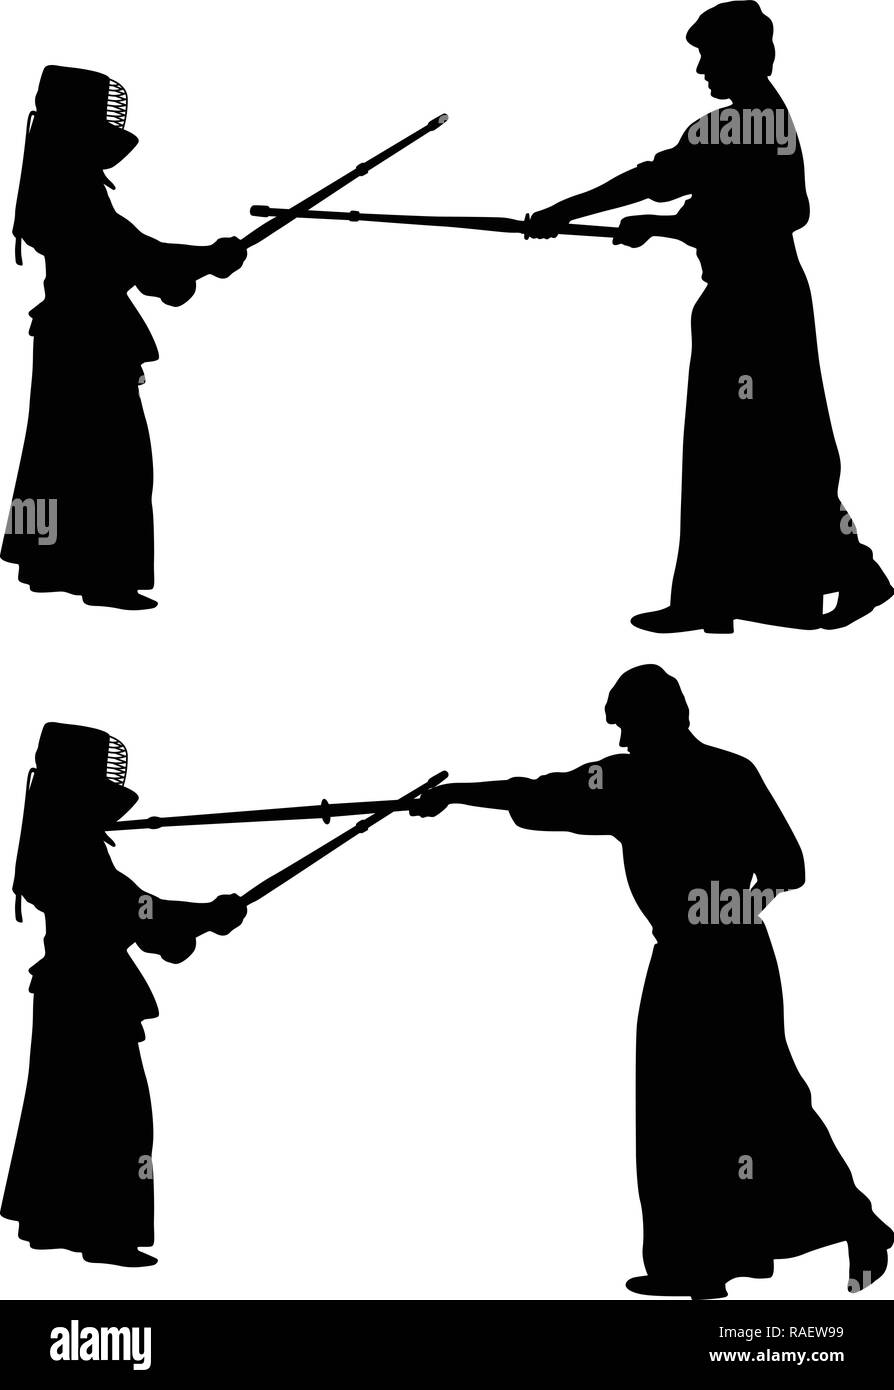 Two Swords Symbol Kendo Modern Martial Arts Stock Vector by ©prosymbols  217949336